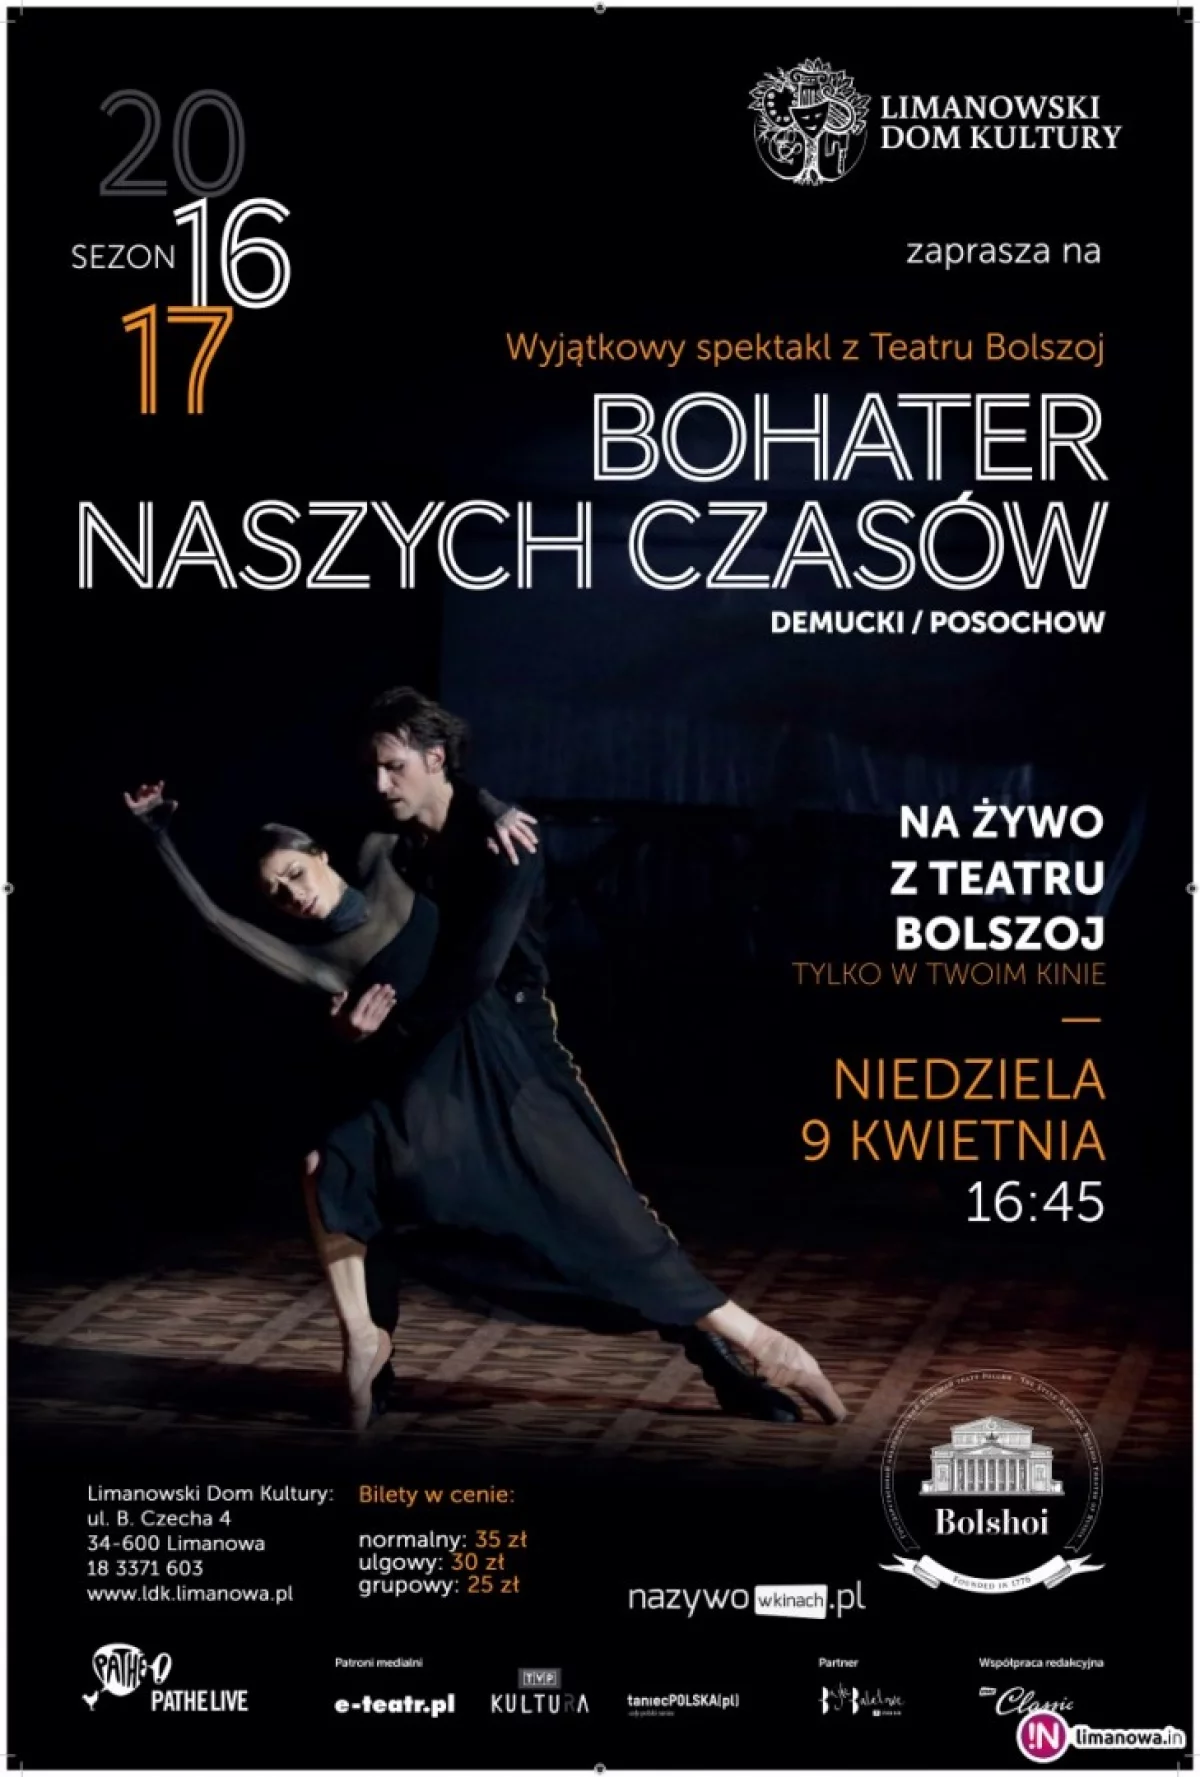 „BOHATER NASZYCH CZASÓW” - transmisja NA ŻYWO baletu z Moskwy 9 kwietnia w kinie Klaps!